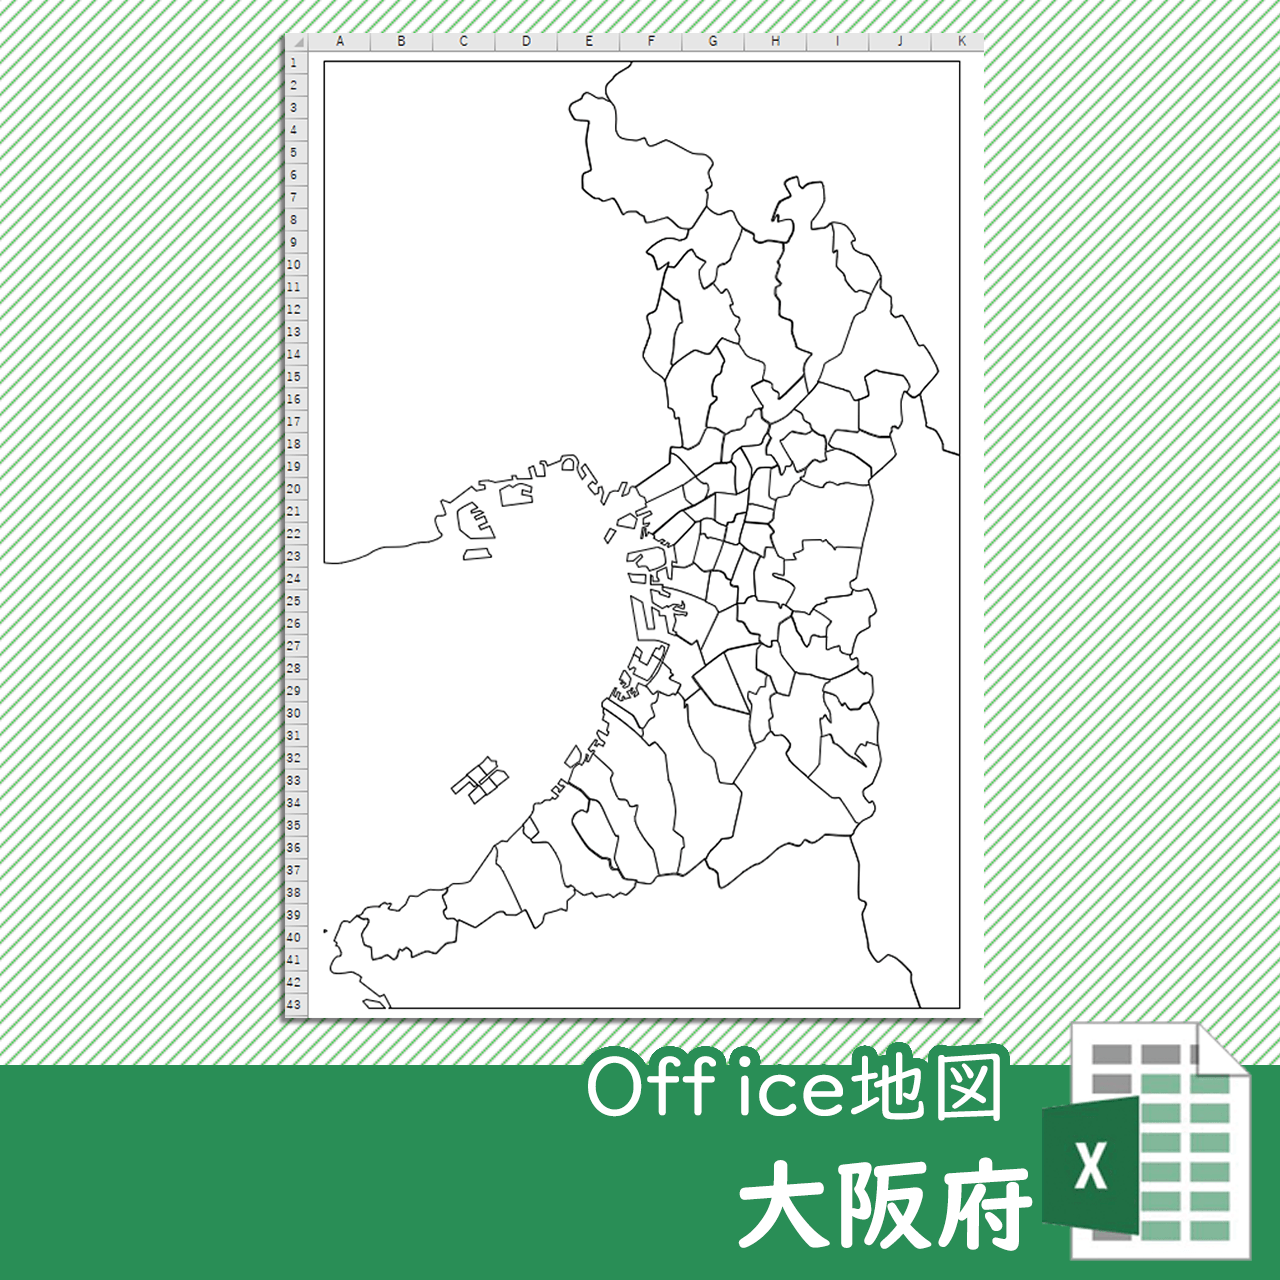 大阪府のOffice地図のサムネイル